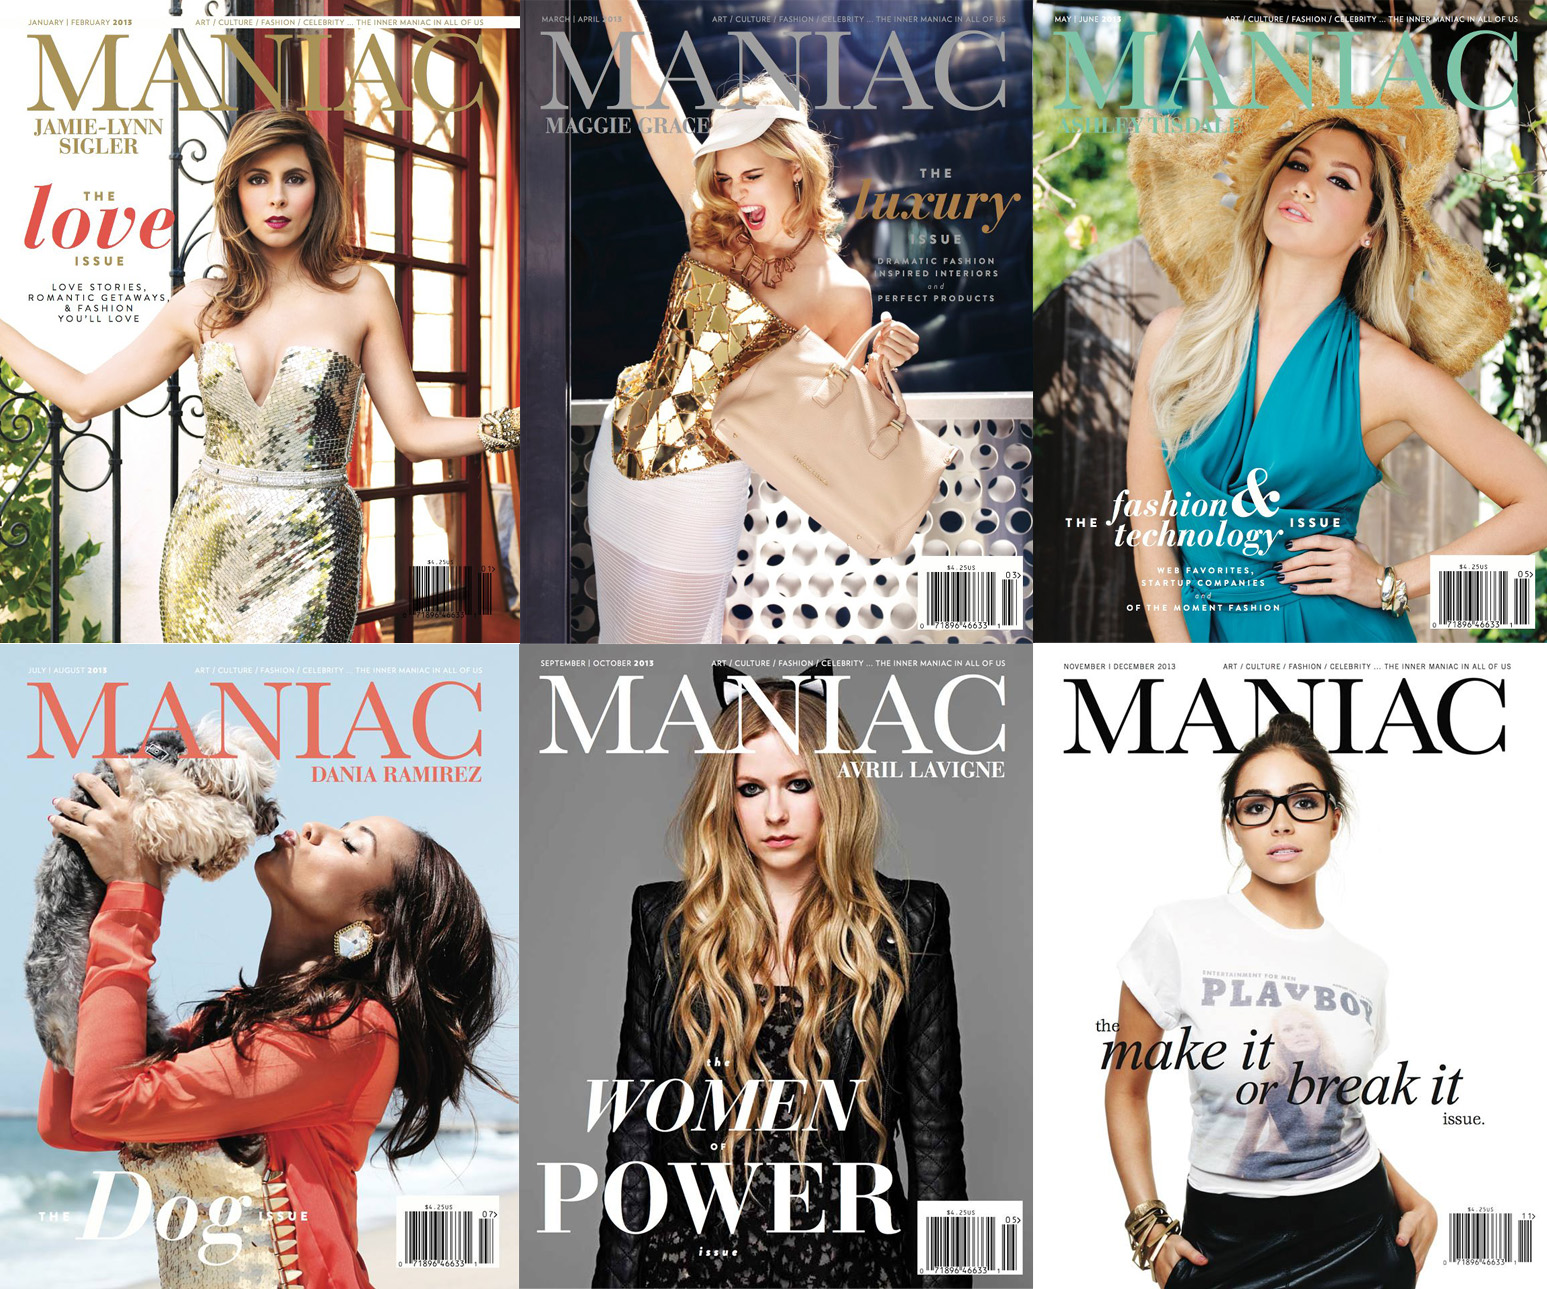 2013 Maniac Magazine Covers - Maniac Magazine